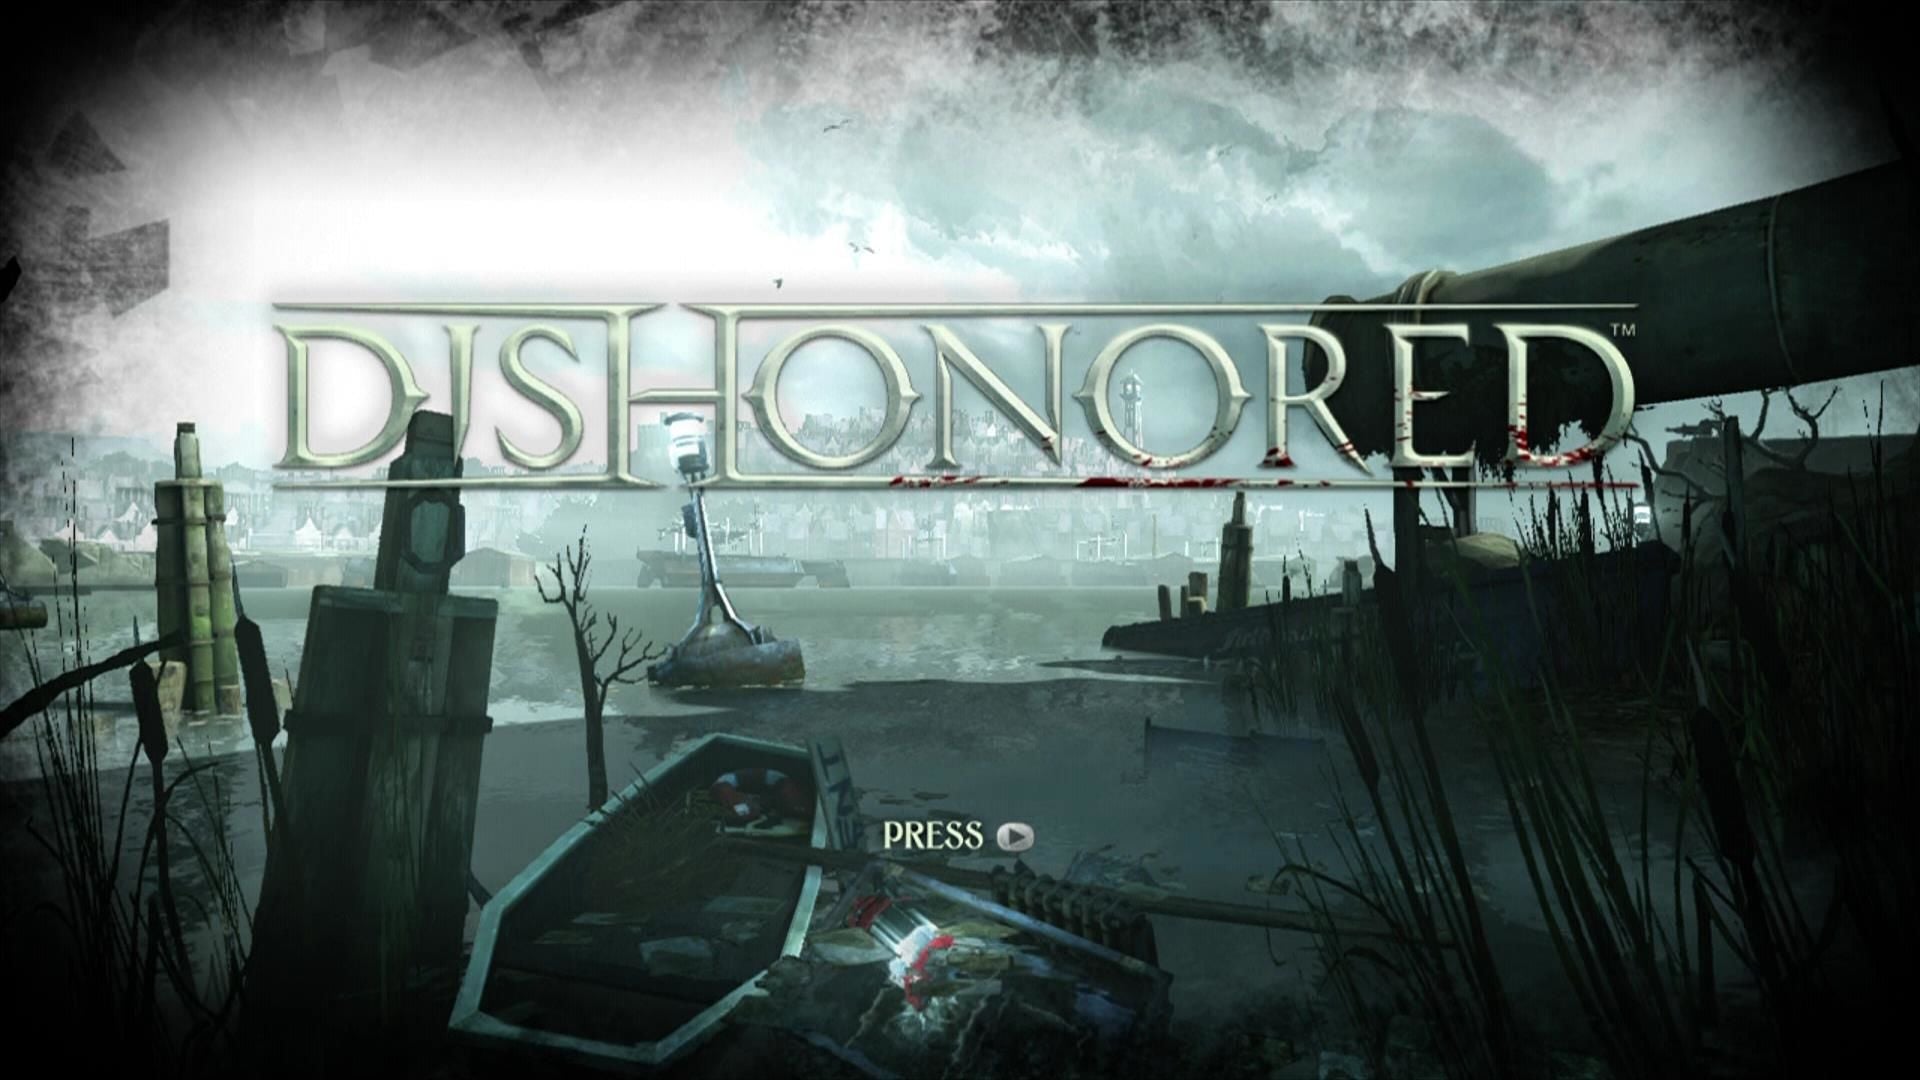 Dishonored (Platinum Hits) - Xbox 360 Game